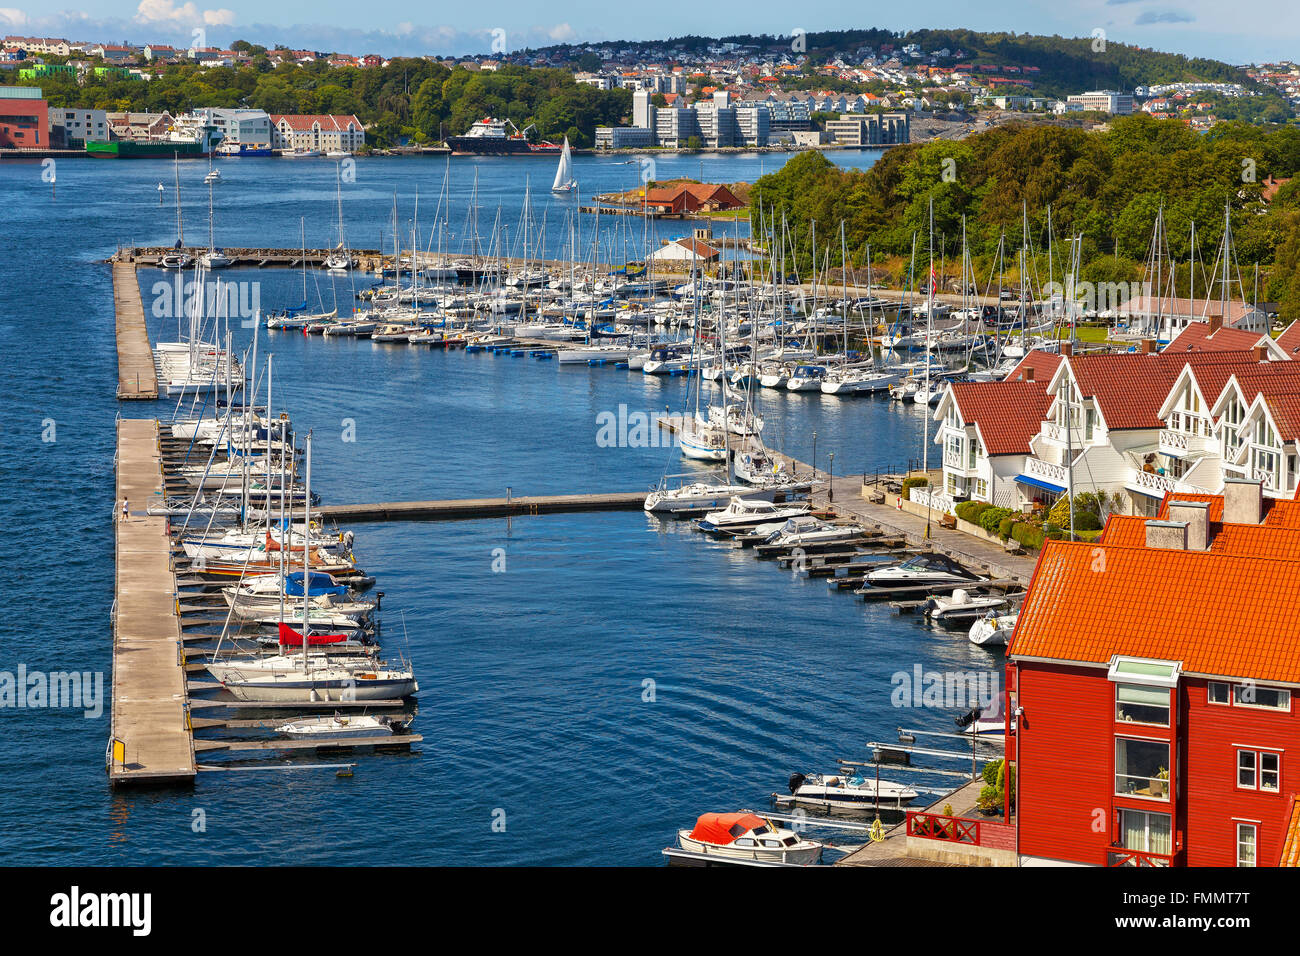 Voilier de plaisance avec de nombreux voiliers amarrés dans le port de Stavanger, Norvège. Banque D'Images